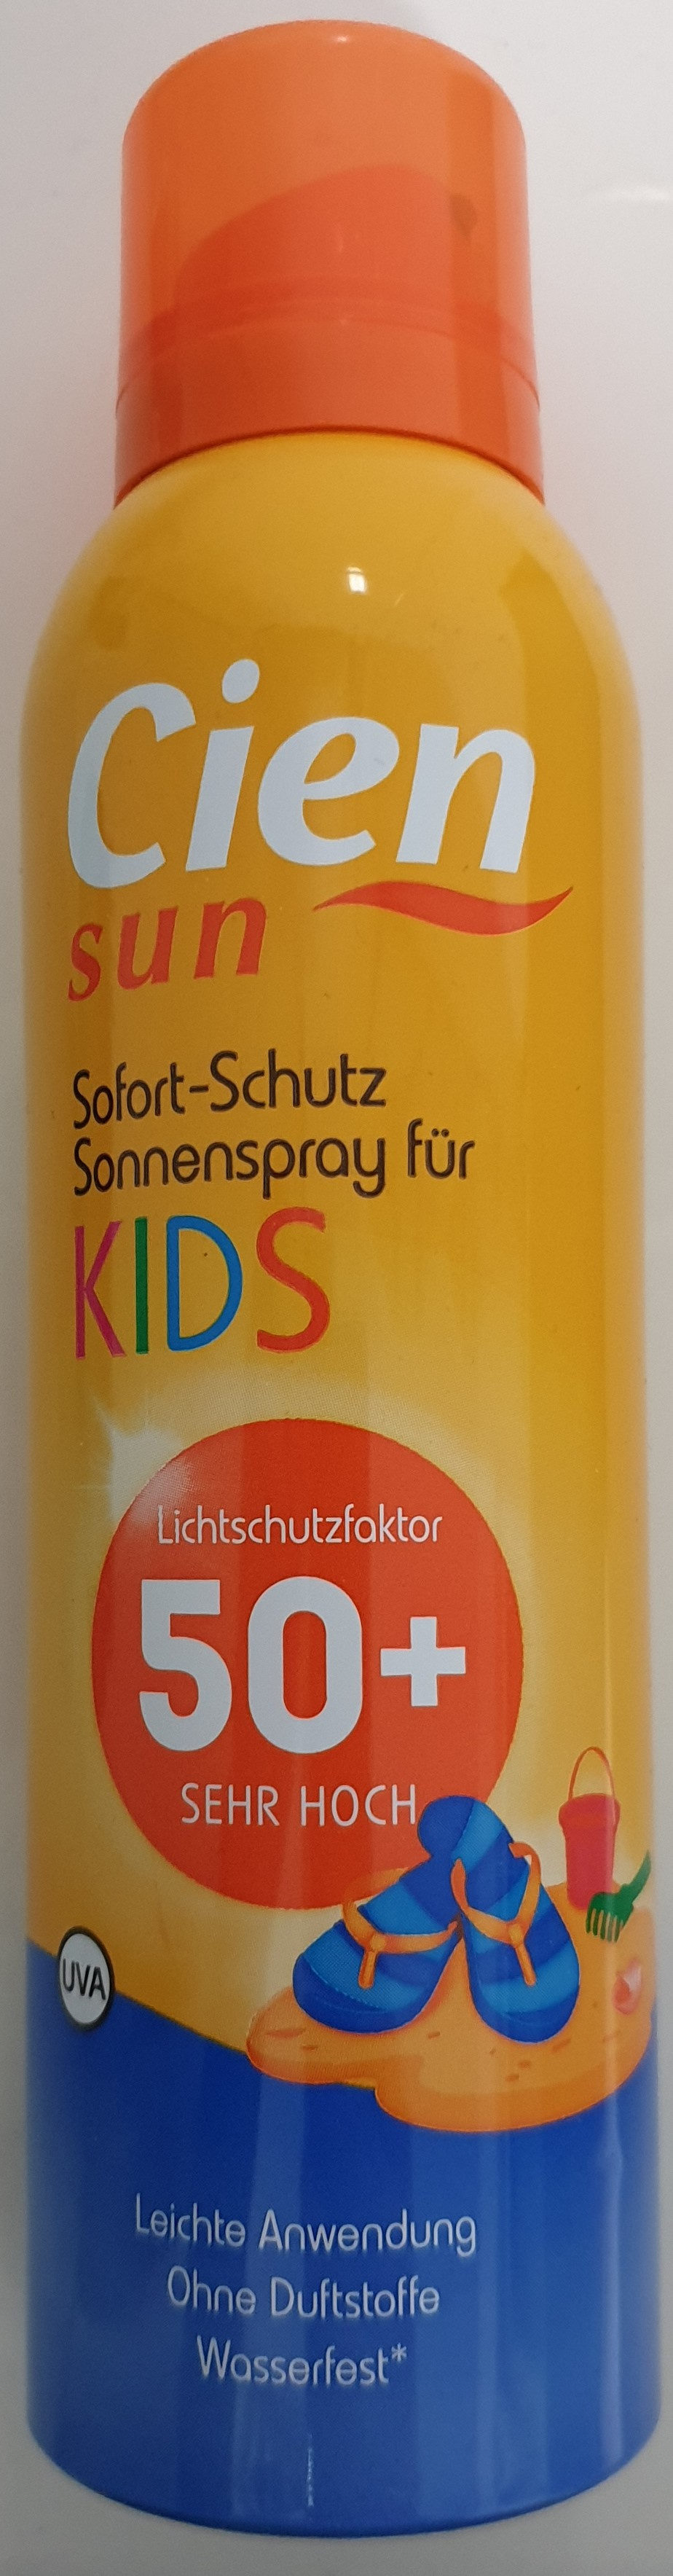 Sofort-Schutz Sonnenspray für Kids 50+ - Tuote - de